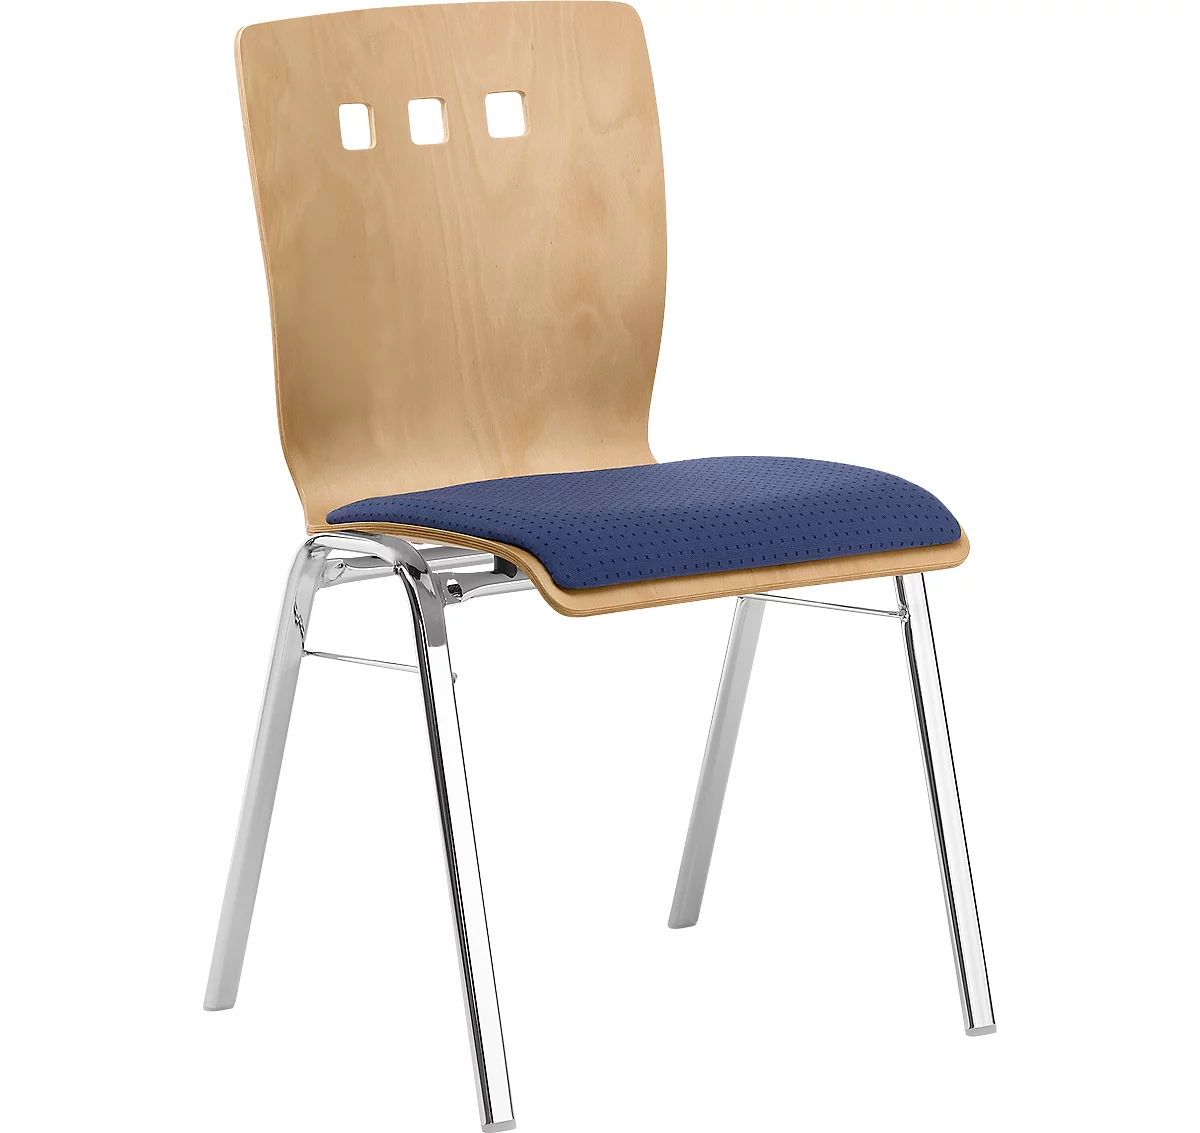 Silla apilable 7450, asiento moldeado, apoyo lumbar, perforaciones de diseño, sin reposabrazos, tapizado Point/Trevira CS, azul